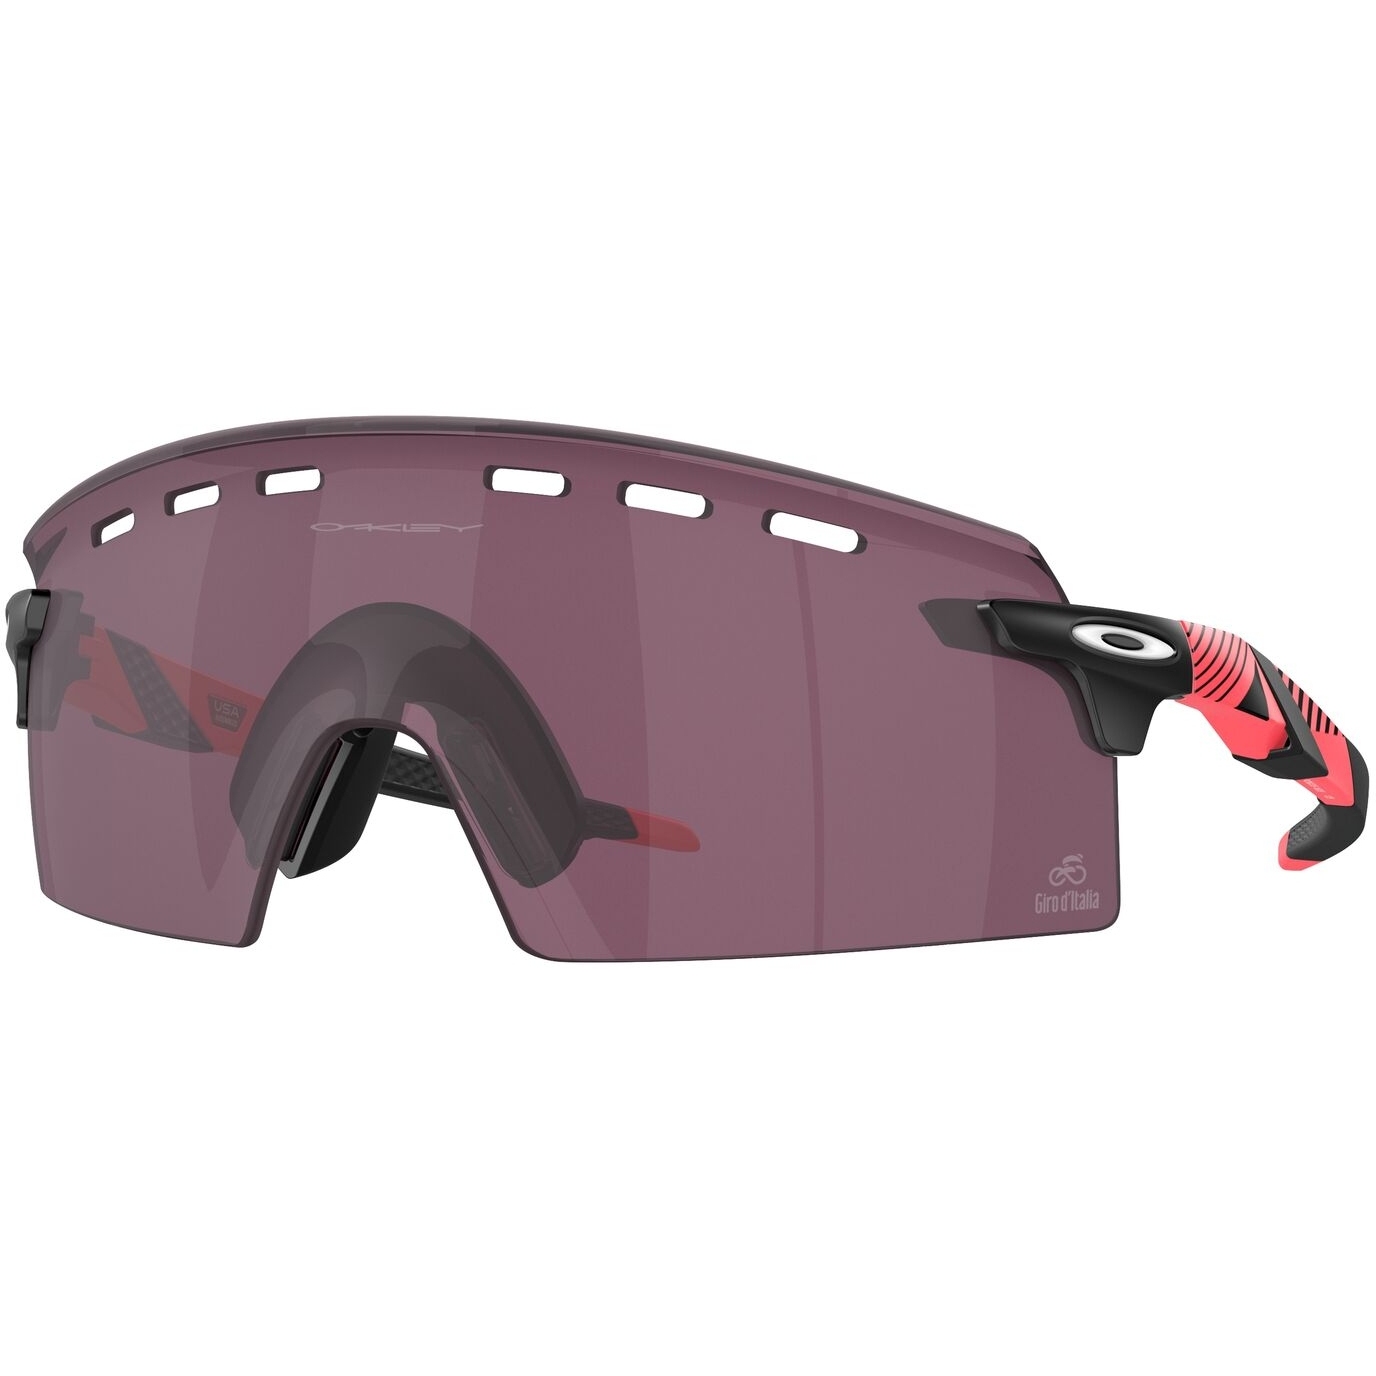 Produktbild von Oakley Encoder Strike Brille - Giro Pink Stripes/Prizm Road Black - OO9235-1639